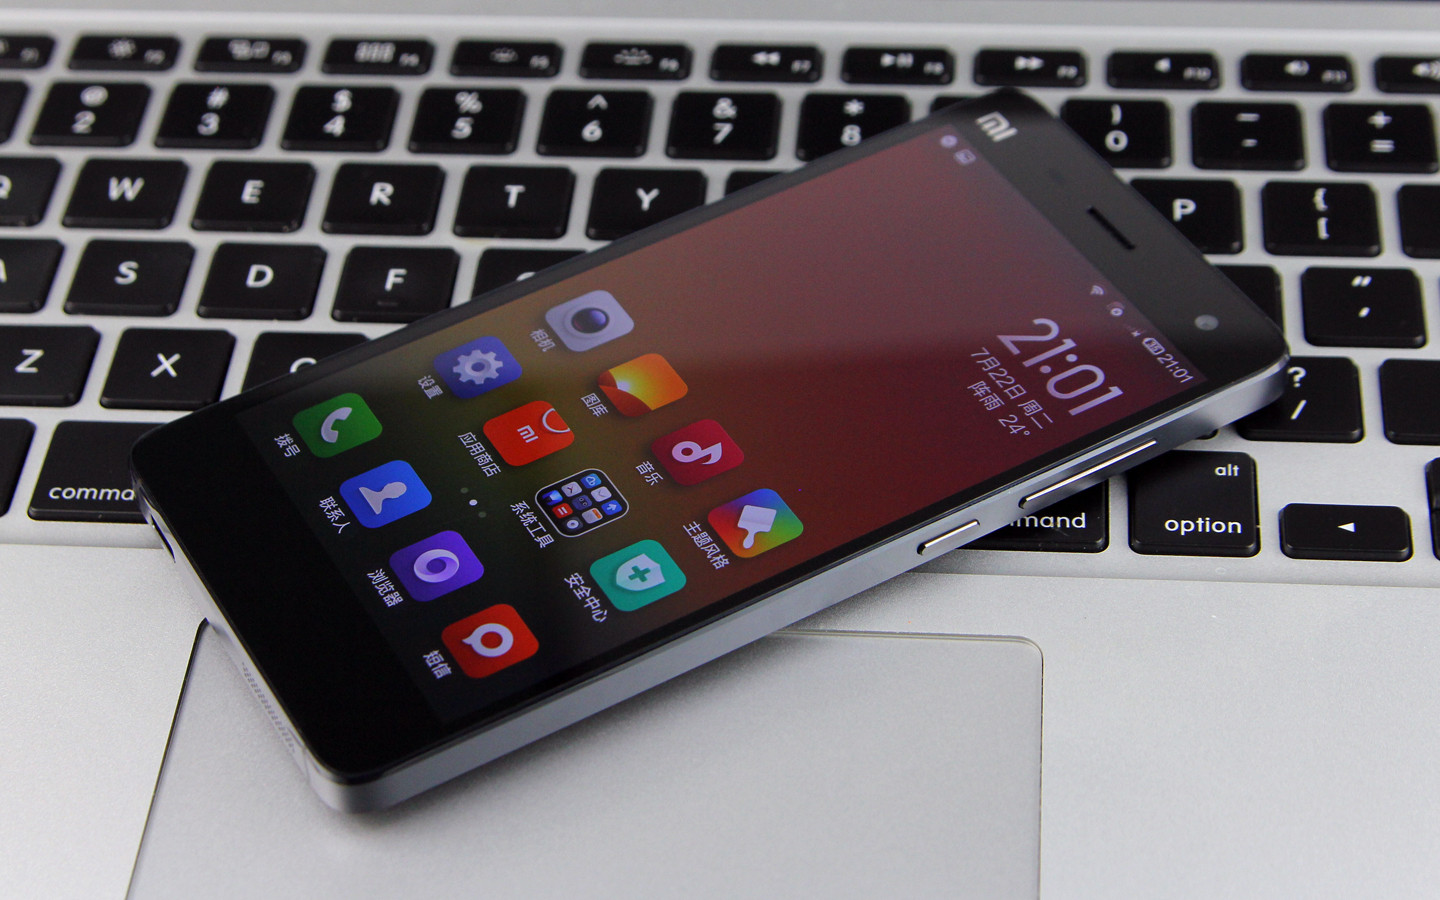 AnTuTu công bố top smartphone phổ biến, Xiaomi đứng đầu